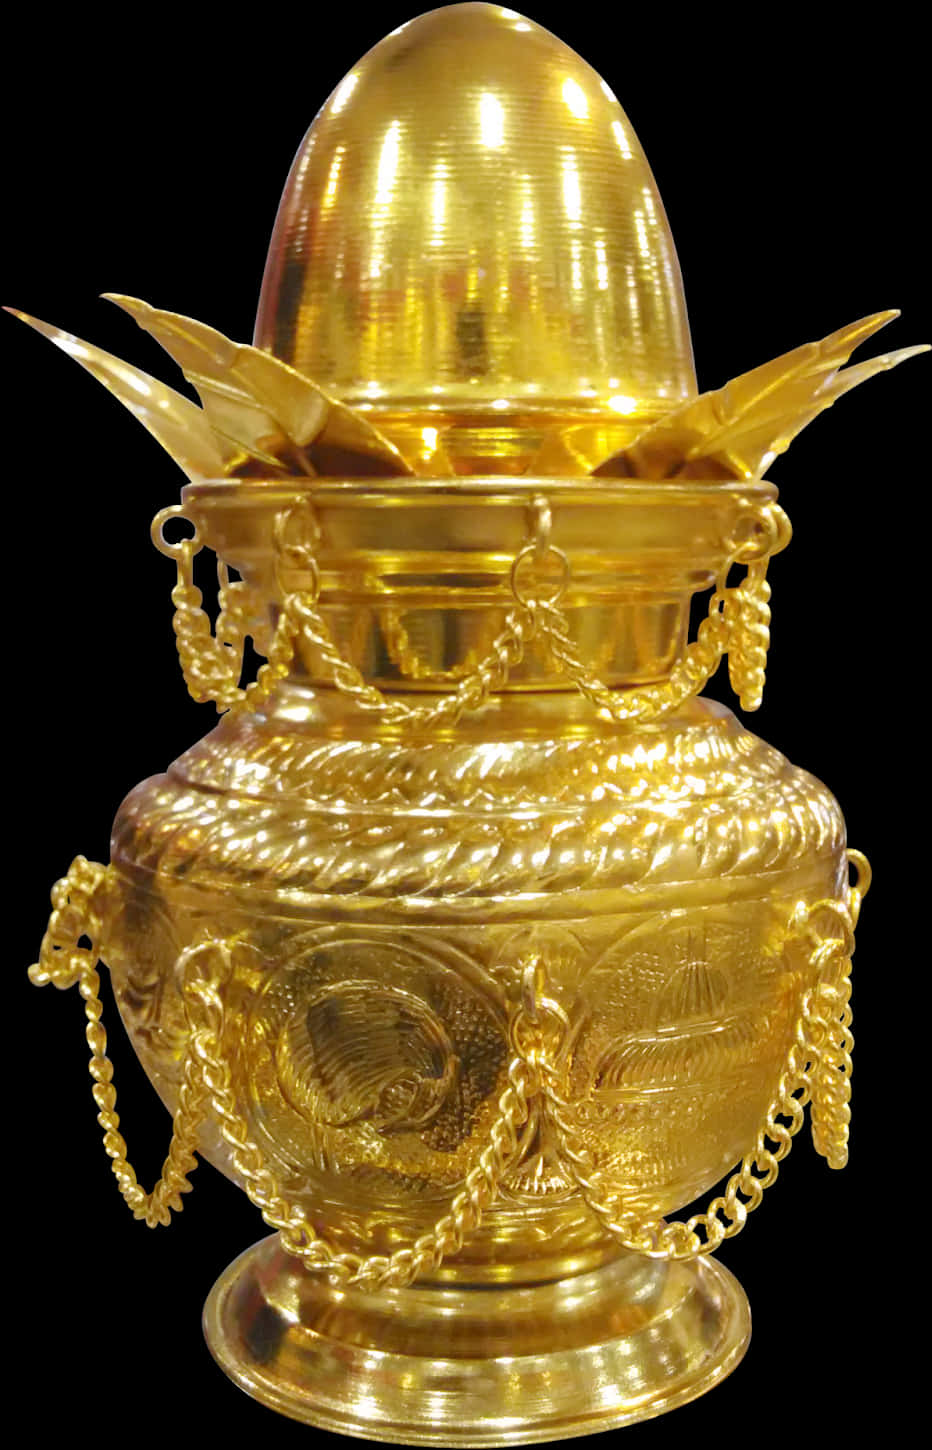 Golden Kalash Traditional Indian Vessel PNG image